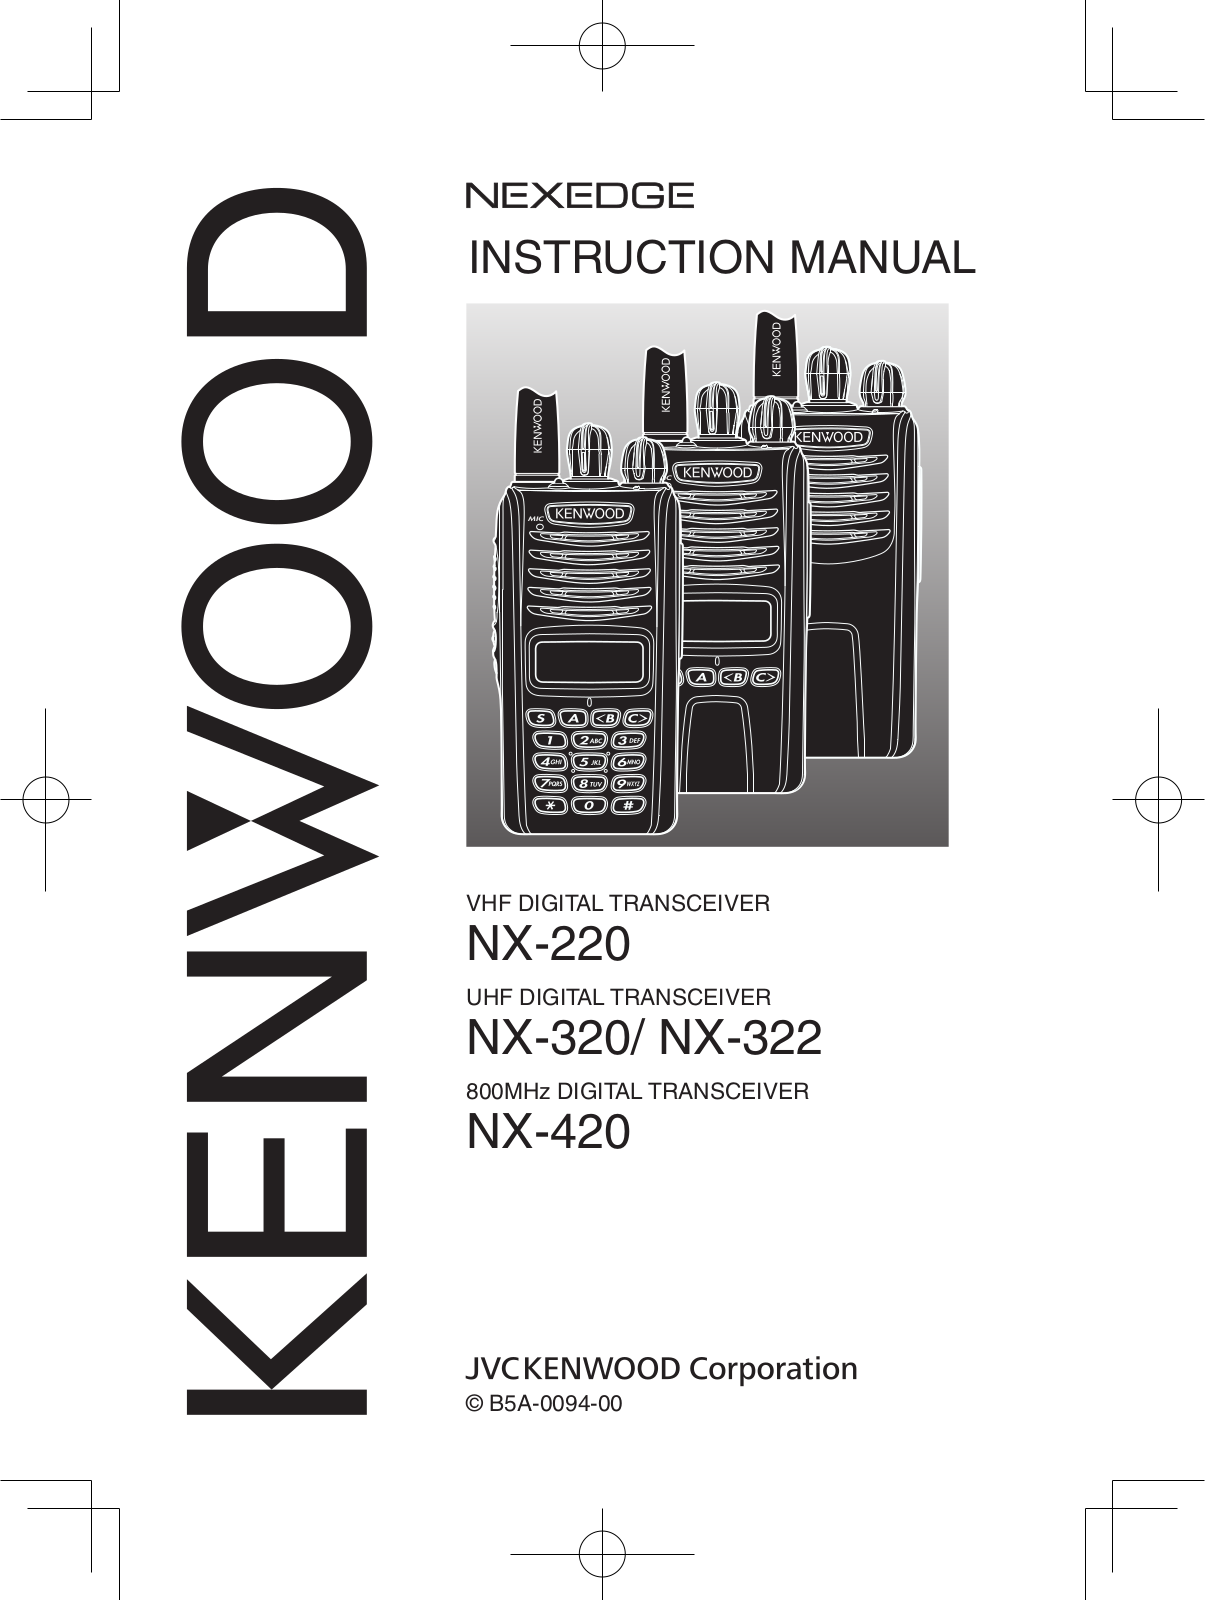 Kenwood NX-420 User Manual